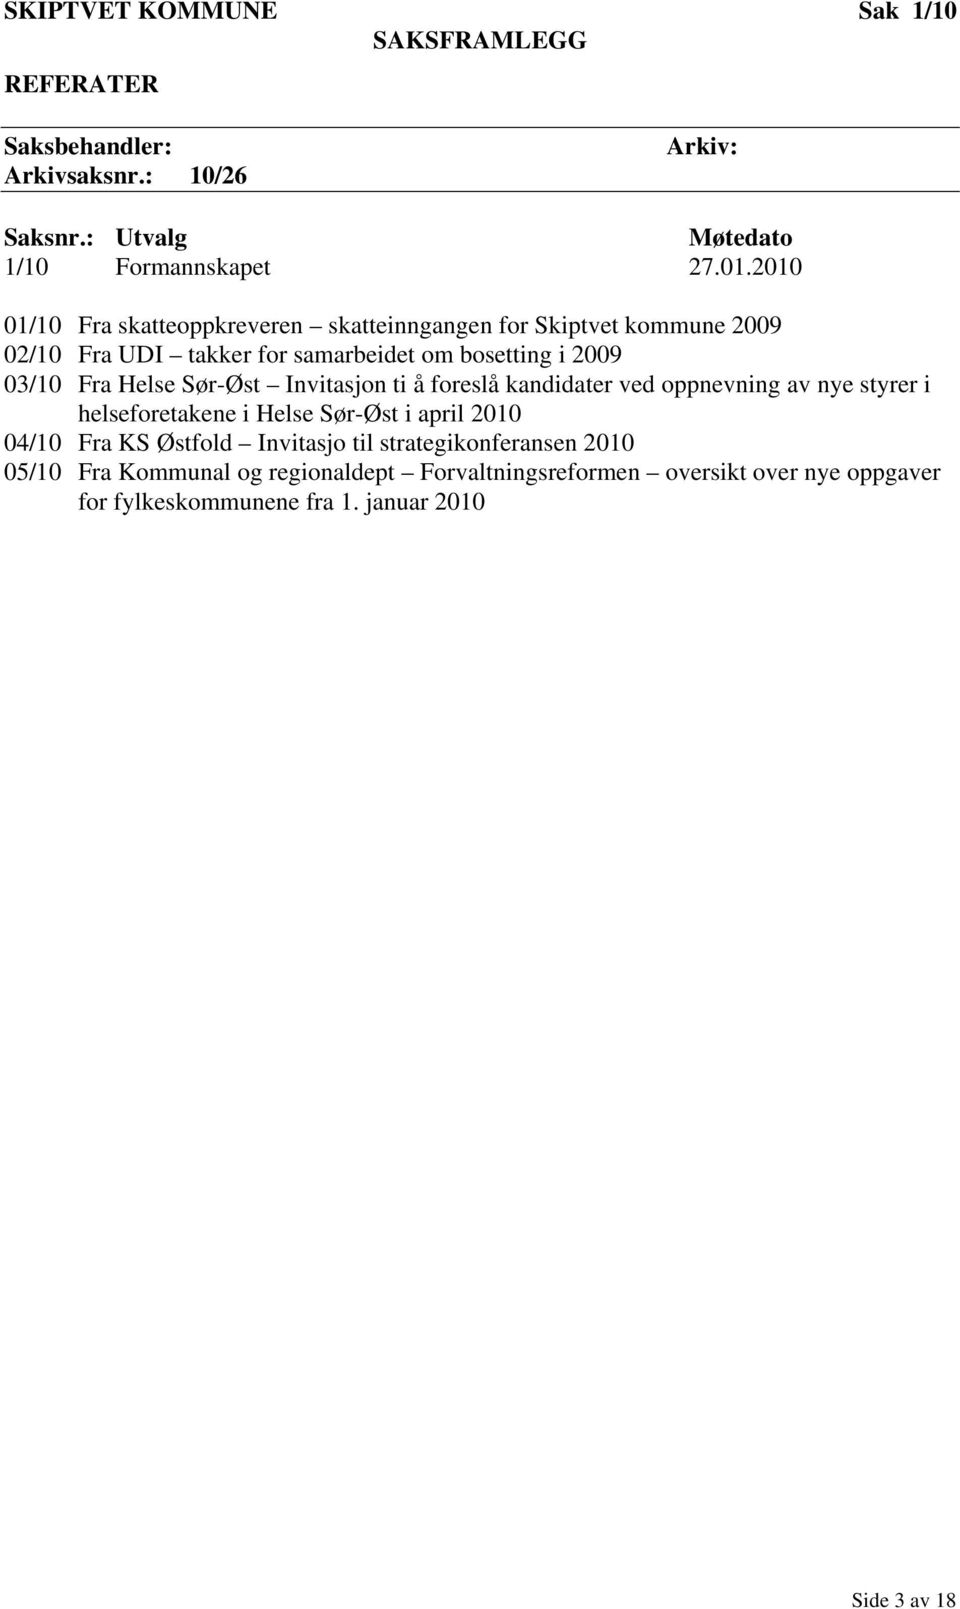 Sør-Øst Invitasjon ti å foreslå kandidater ved oppnevning av nye styrer i helseforetakene i Helse Sør-Øst i april 2010 04/10 Fra KS Østfold Invitasjo